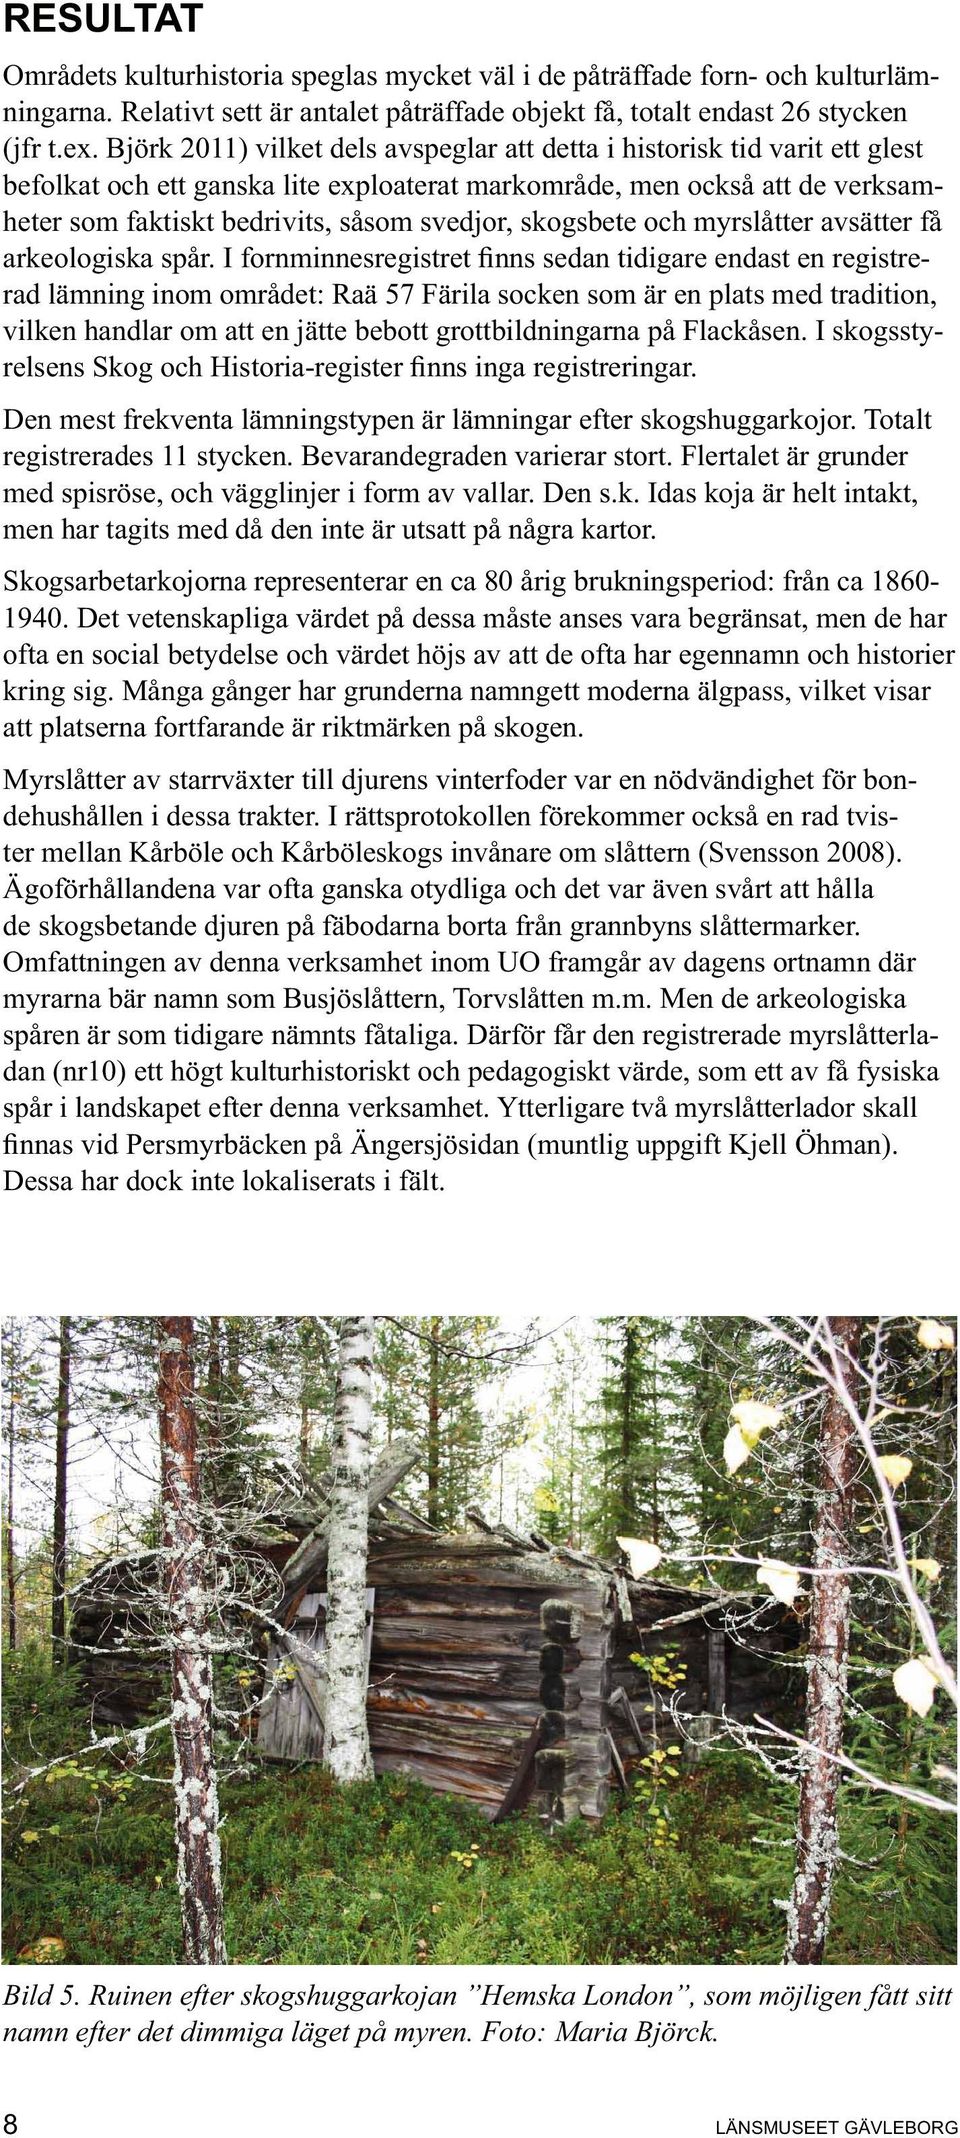 skogsbete och myrslåtter avsätter få rad inom området: Raä 57 Färila socken som är en plats med tradition, vilken handlar om att en jätte bebott grottbildningarna på Flackåsen.